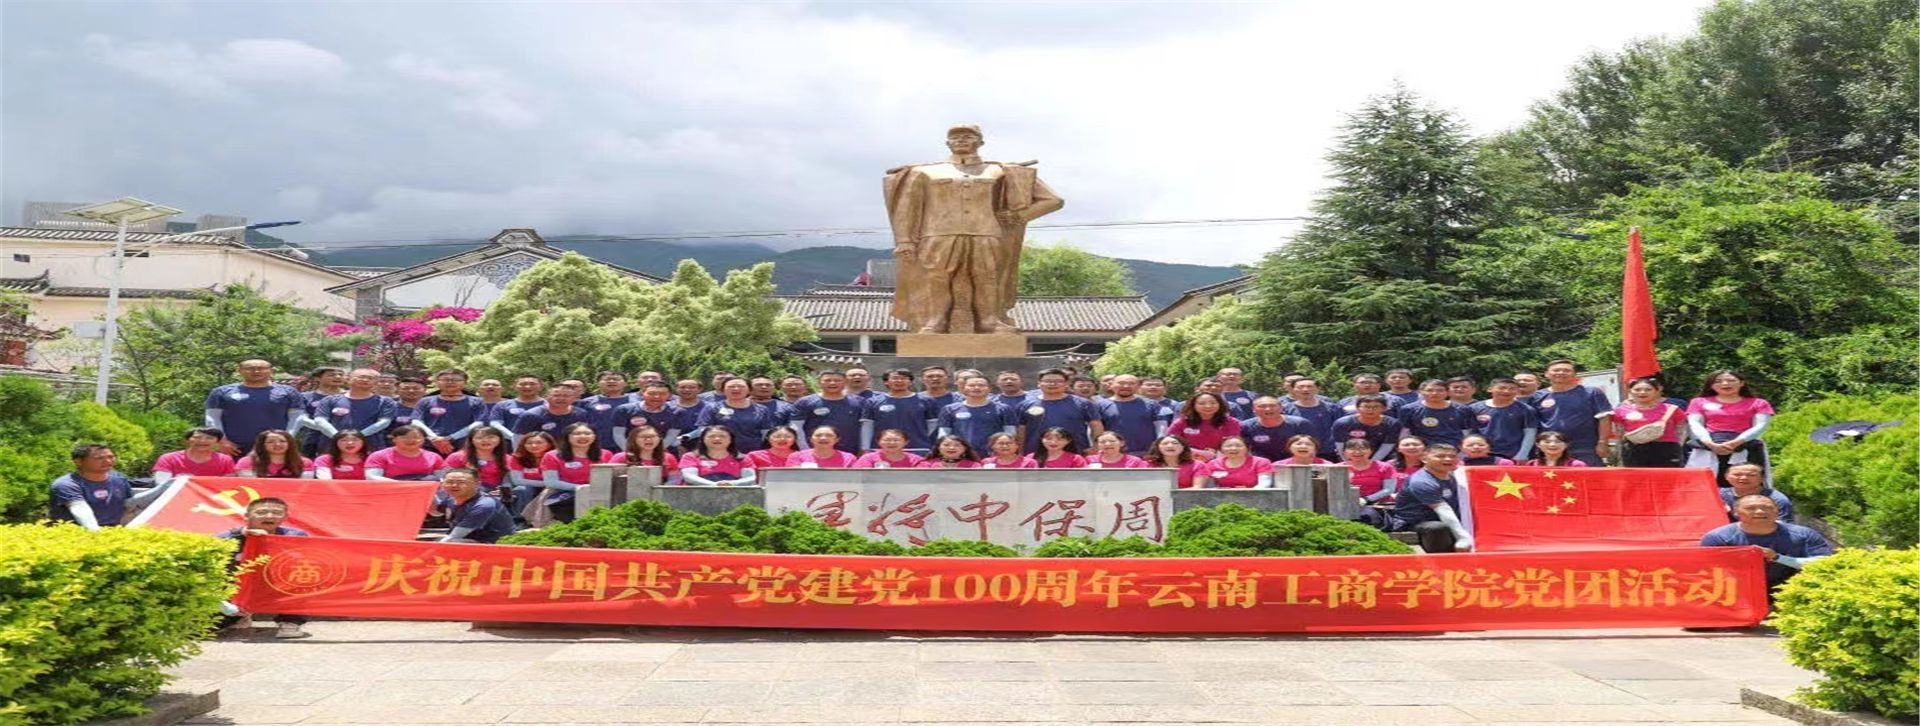 云南工商庆祝建党百年党团活动